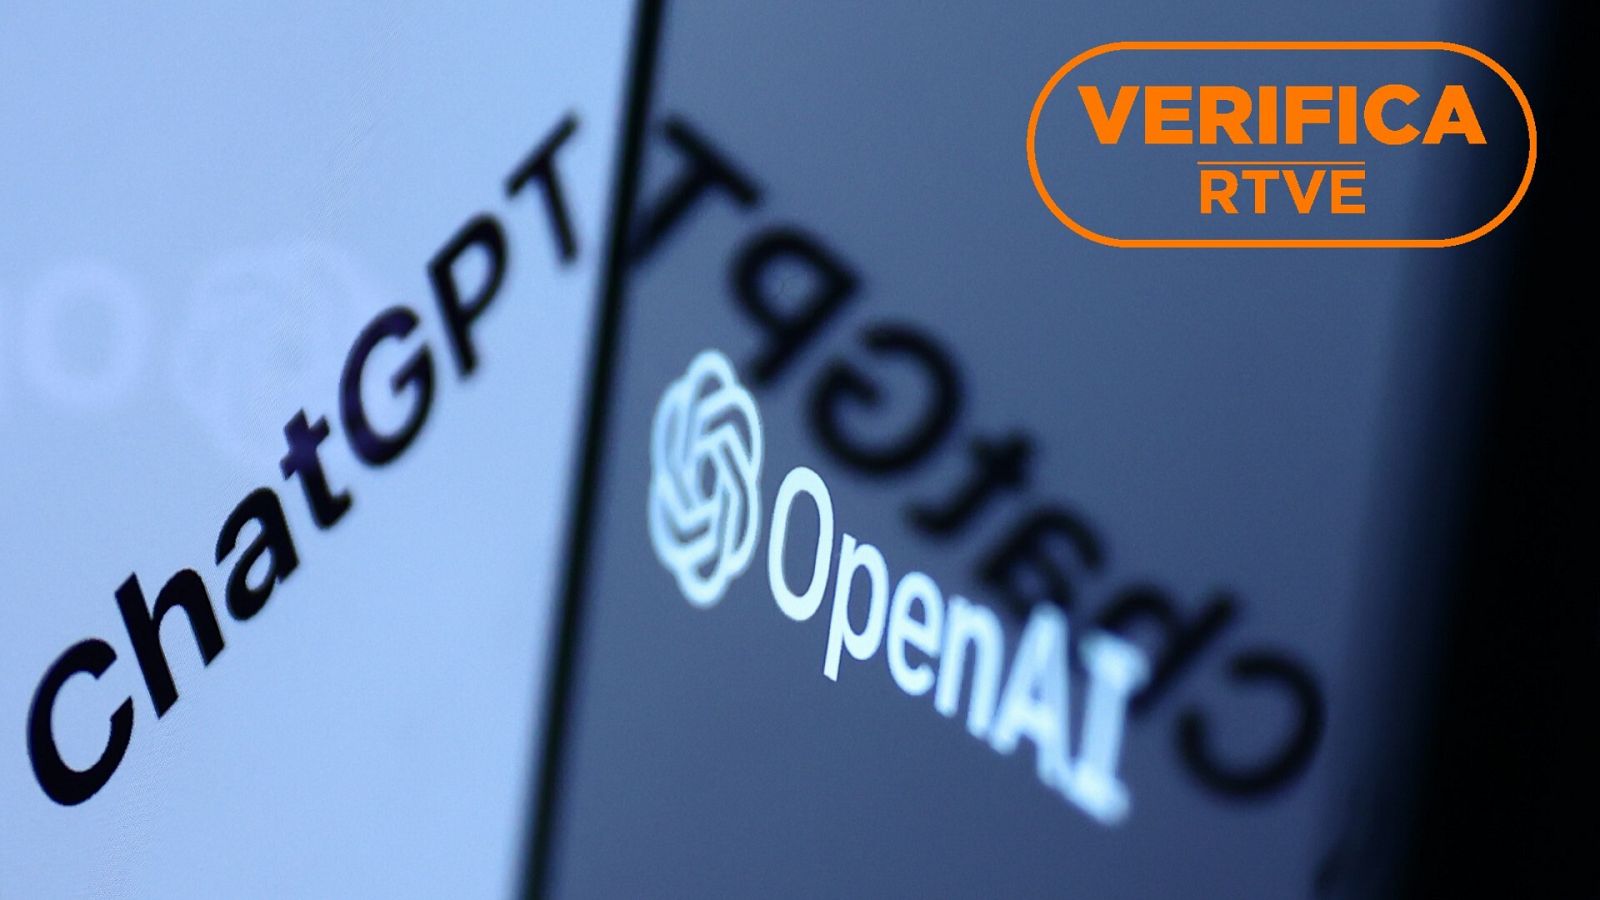 Ponemos a prueba la IA de Chat GPT para registrar sus utilidades y limitaciones en materia de verificación, con el sello 'VerificaRTVE' en naranja